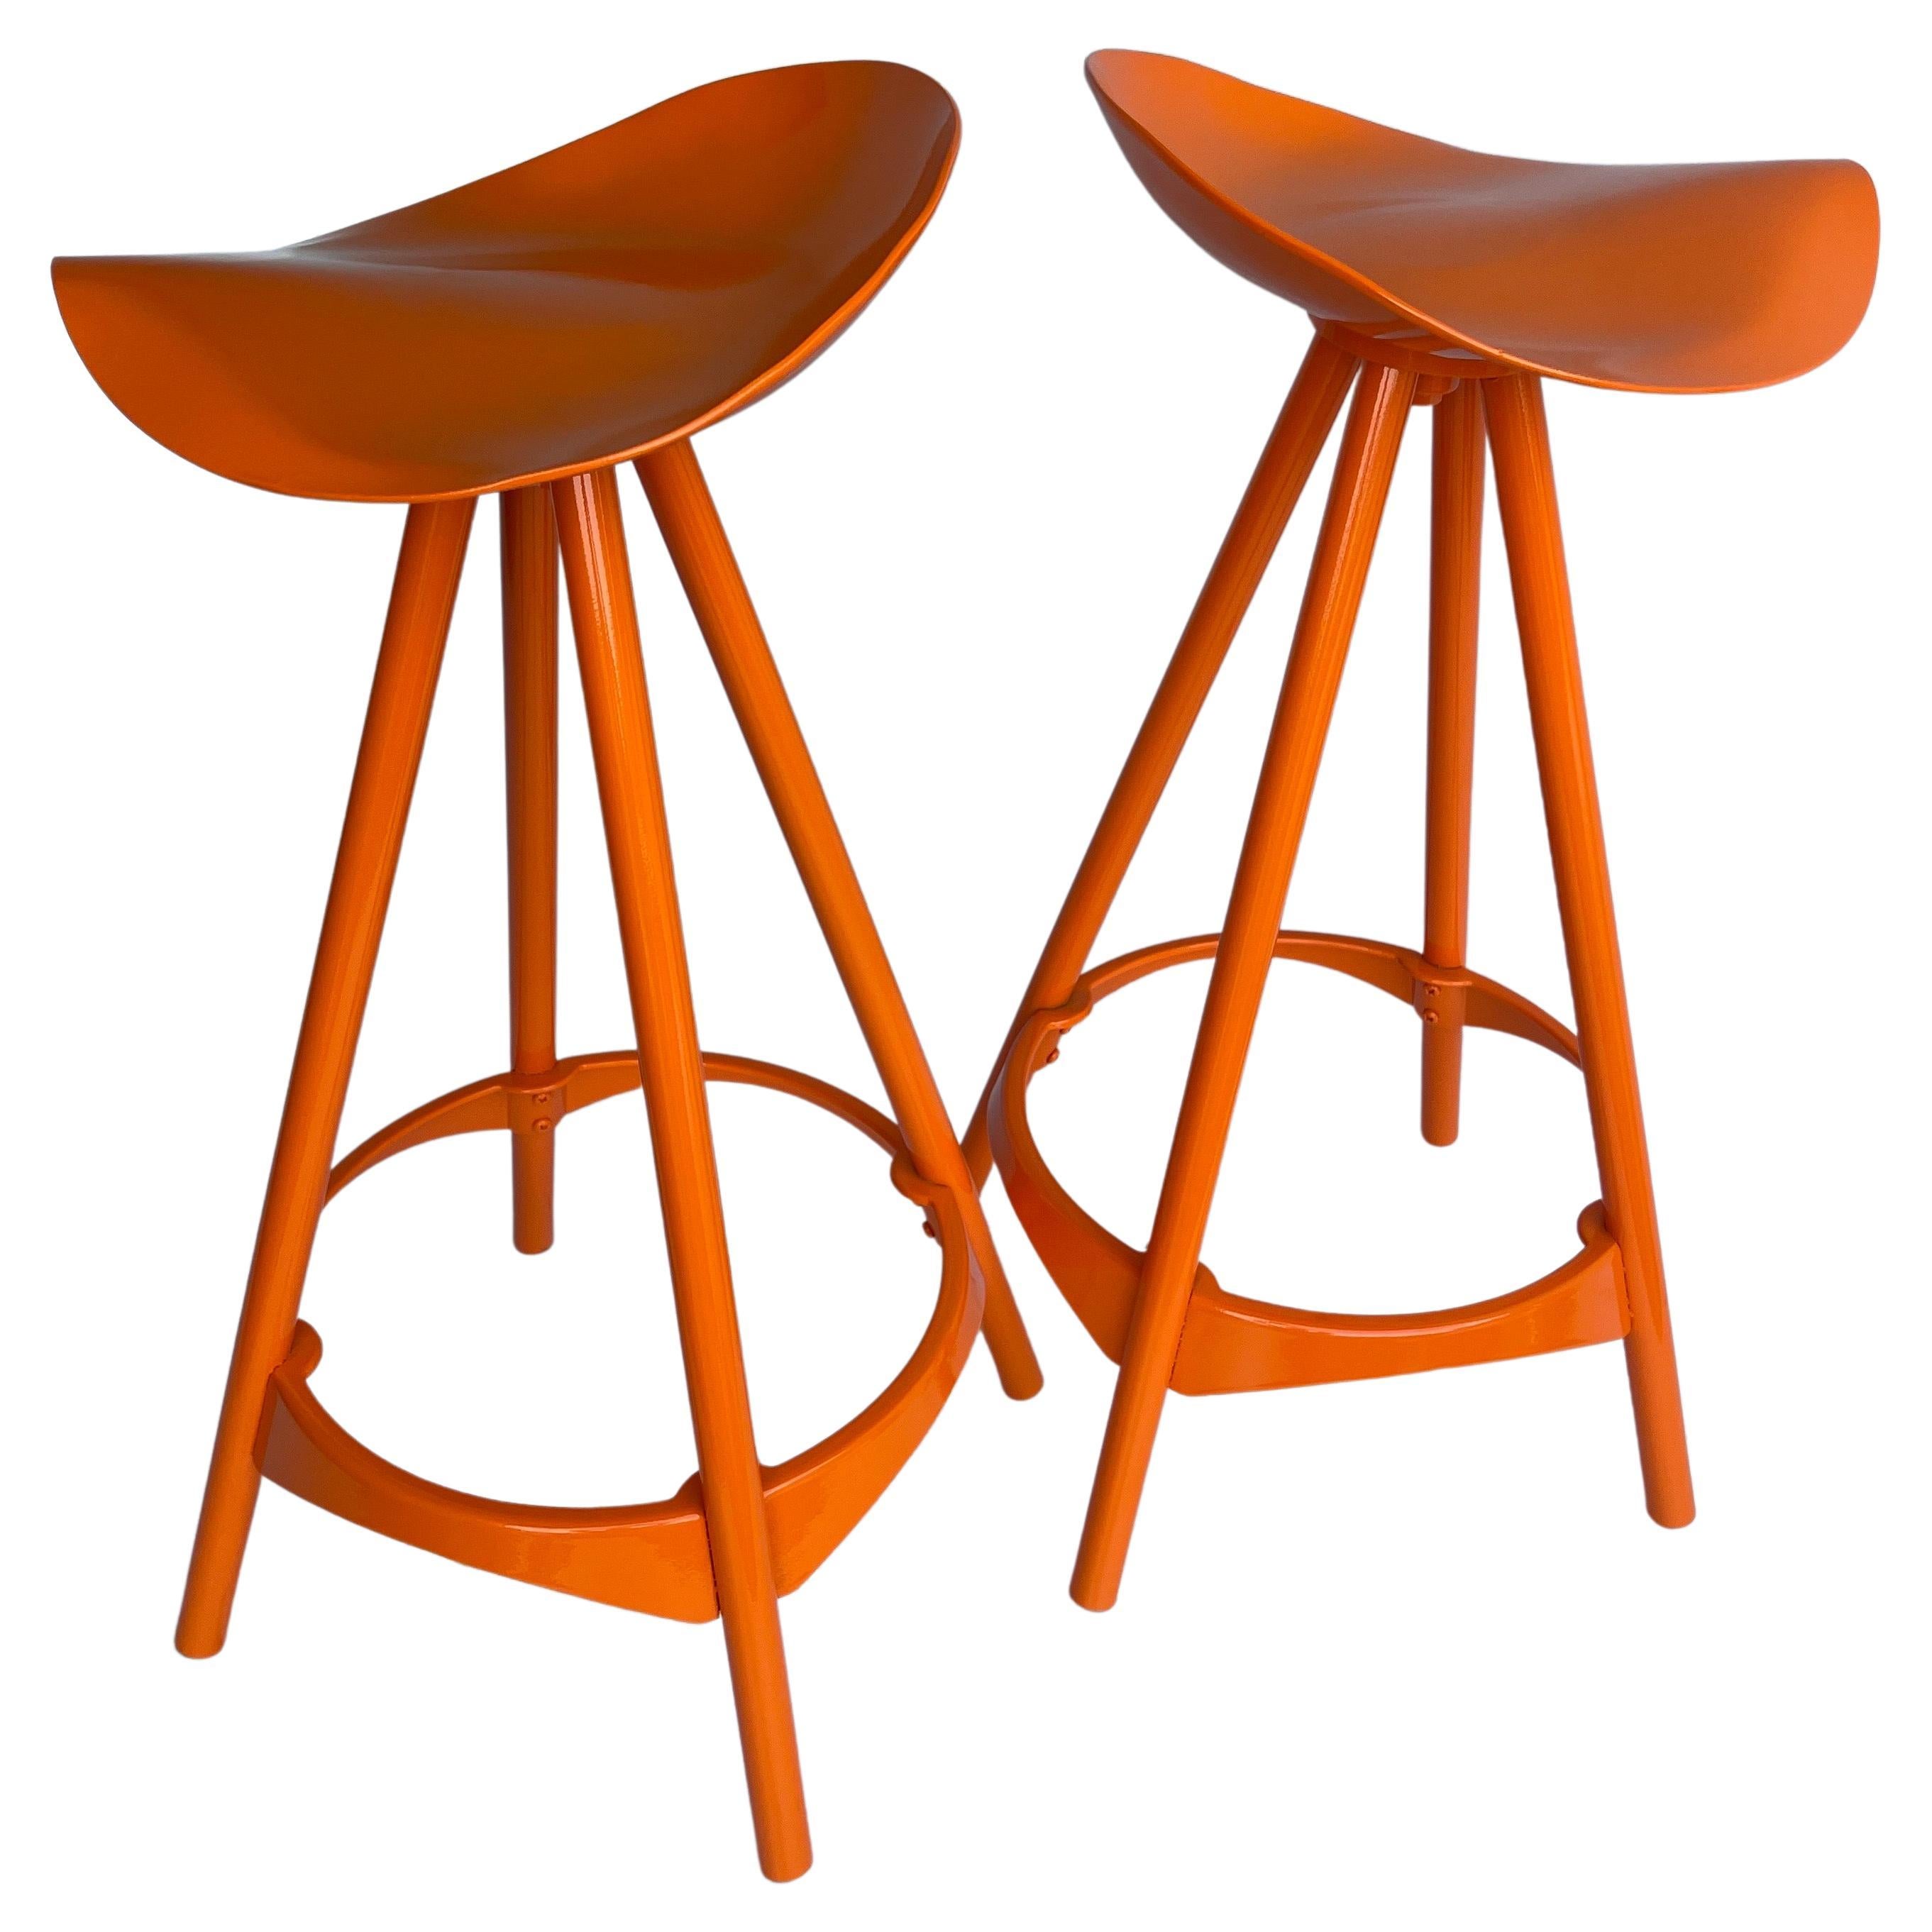 Fin du 20e siècle Paire de tabourets de bar pivotants de style industriel, couleur orange poudré en vente